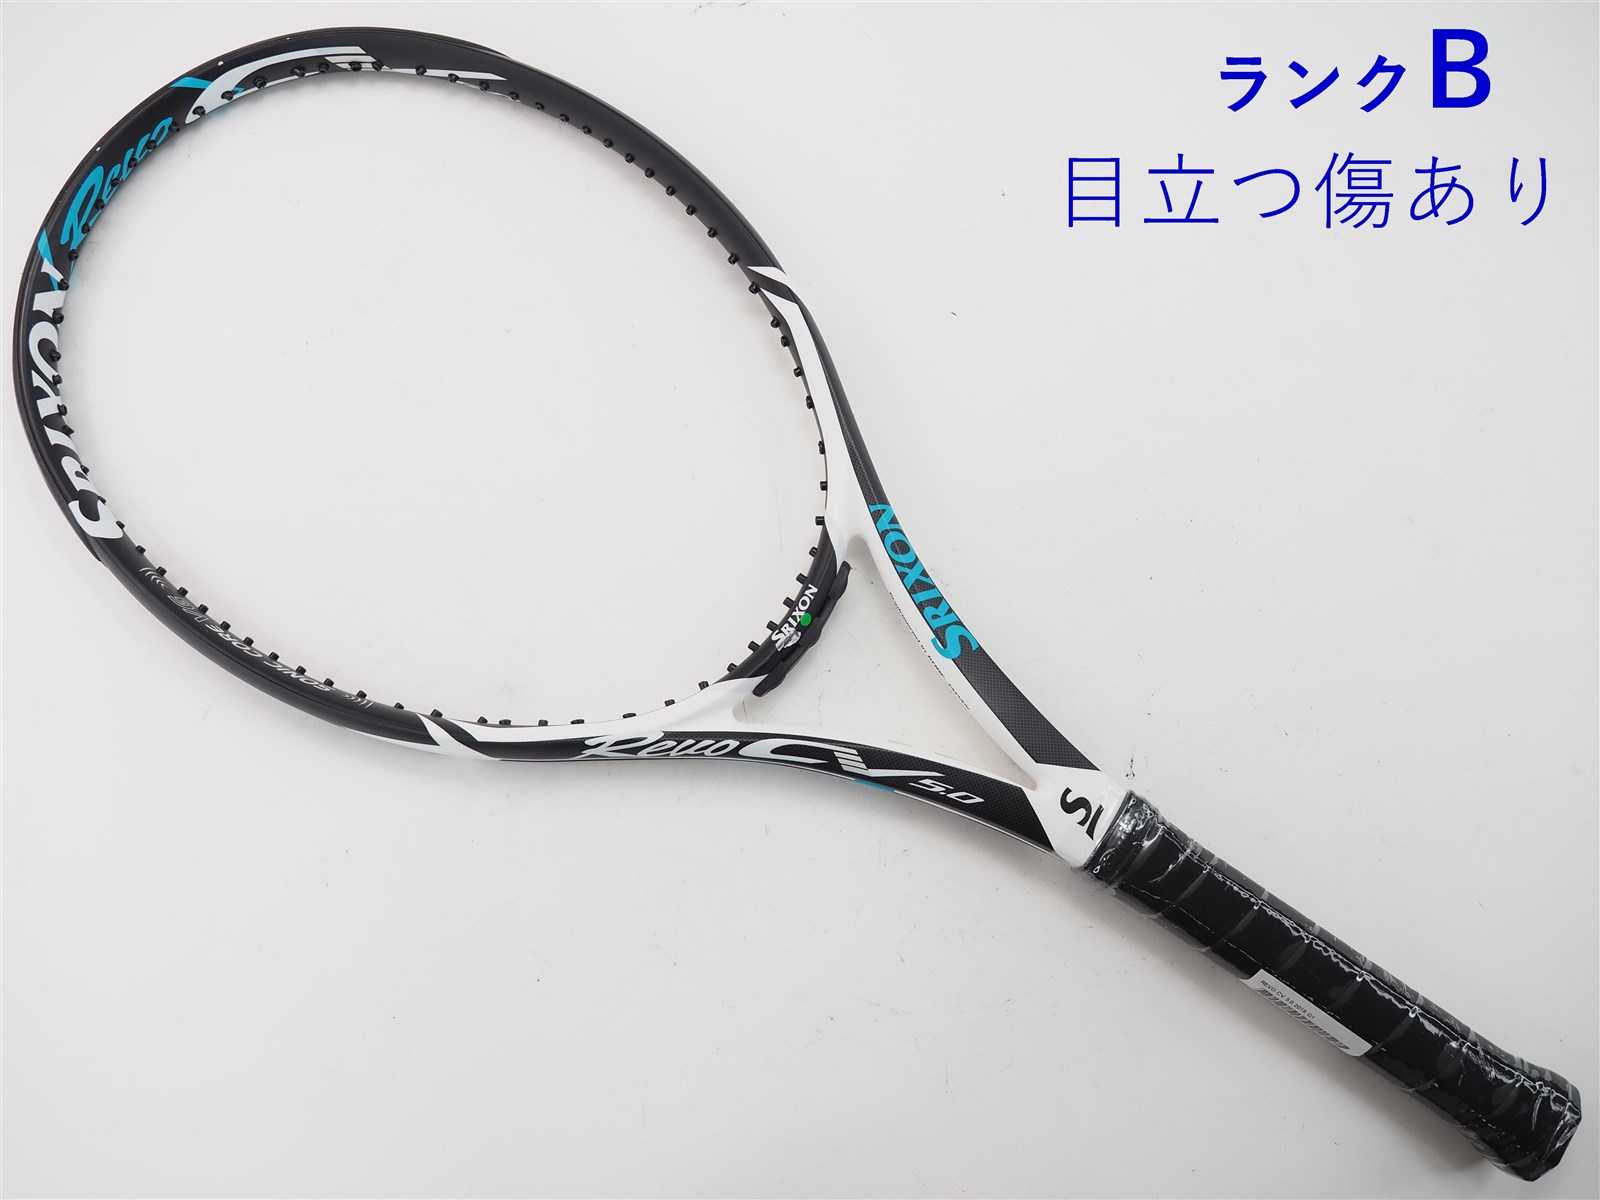 テニスラケット スリクソン レヴォ エックス 4.0 2011年モデル (G2)SRIXON REVO X 4.0 2011